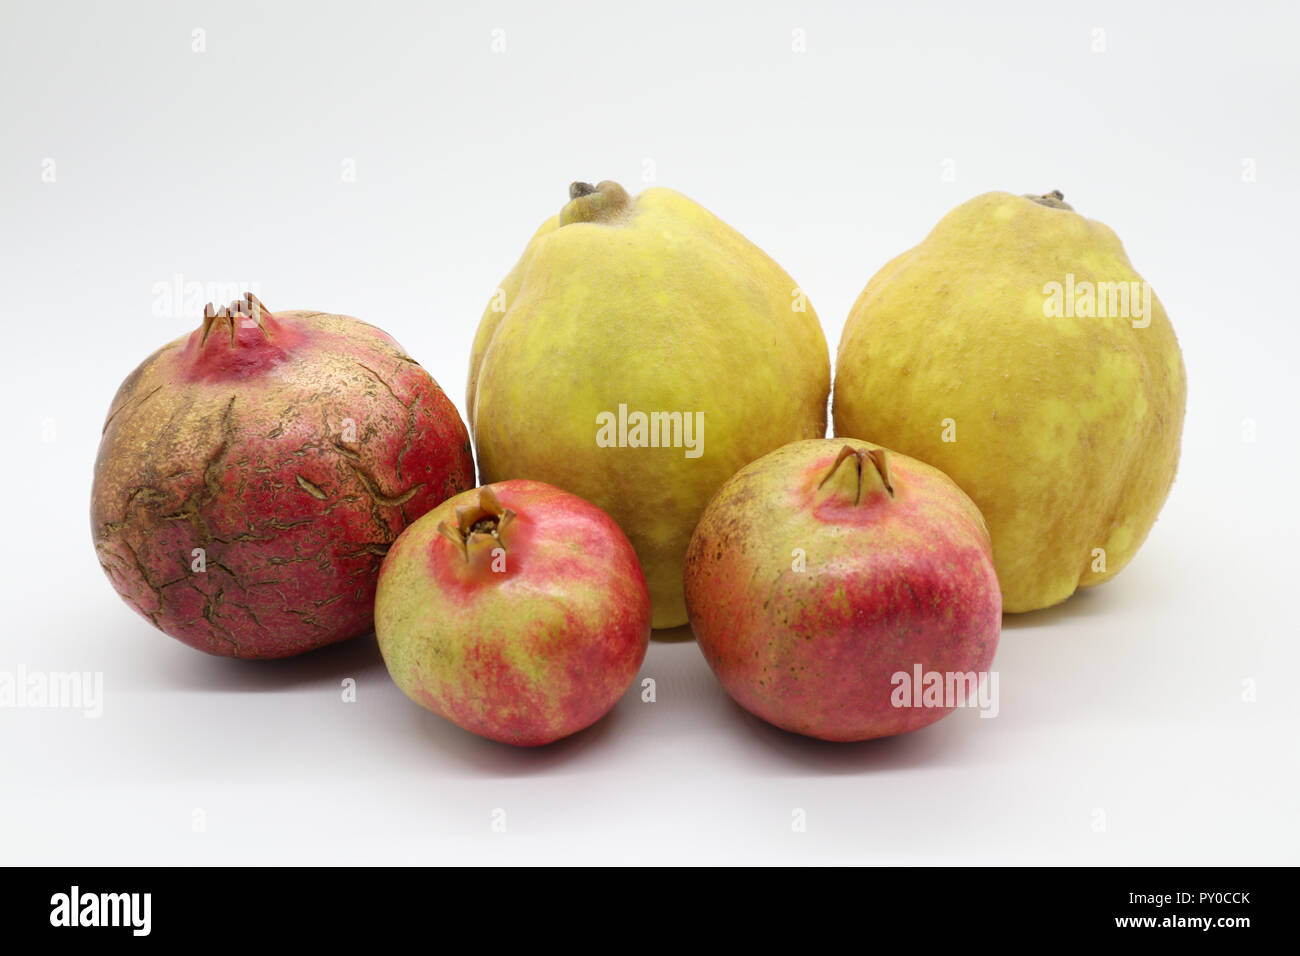 Obst lieferbar hochwertige Bilder für jeden Einsatz, frisch und saftig Stockfoto